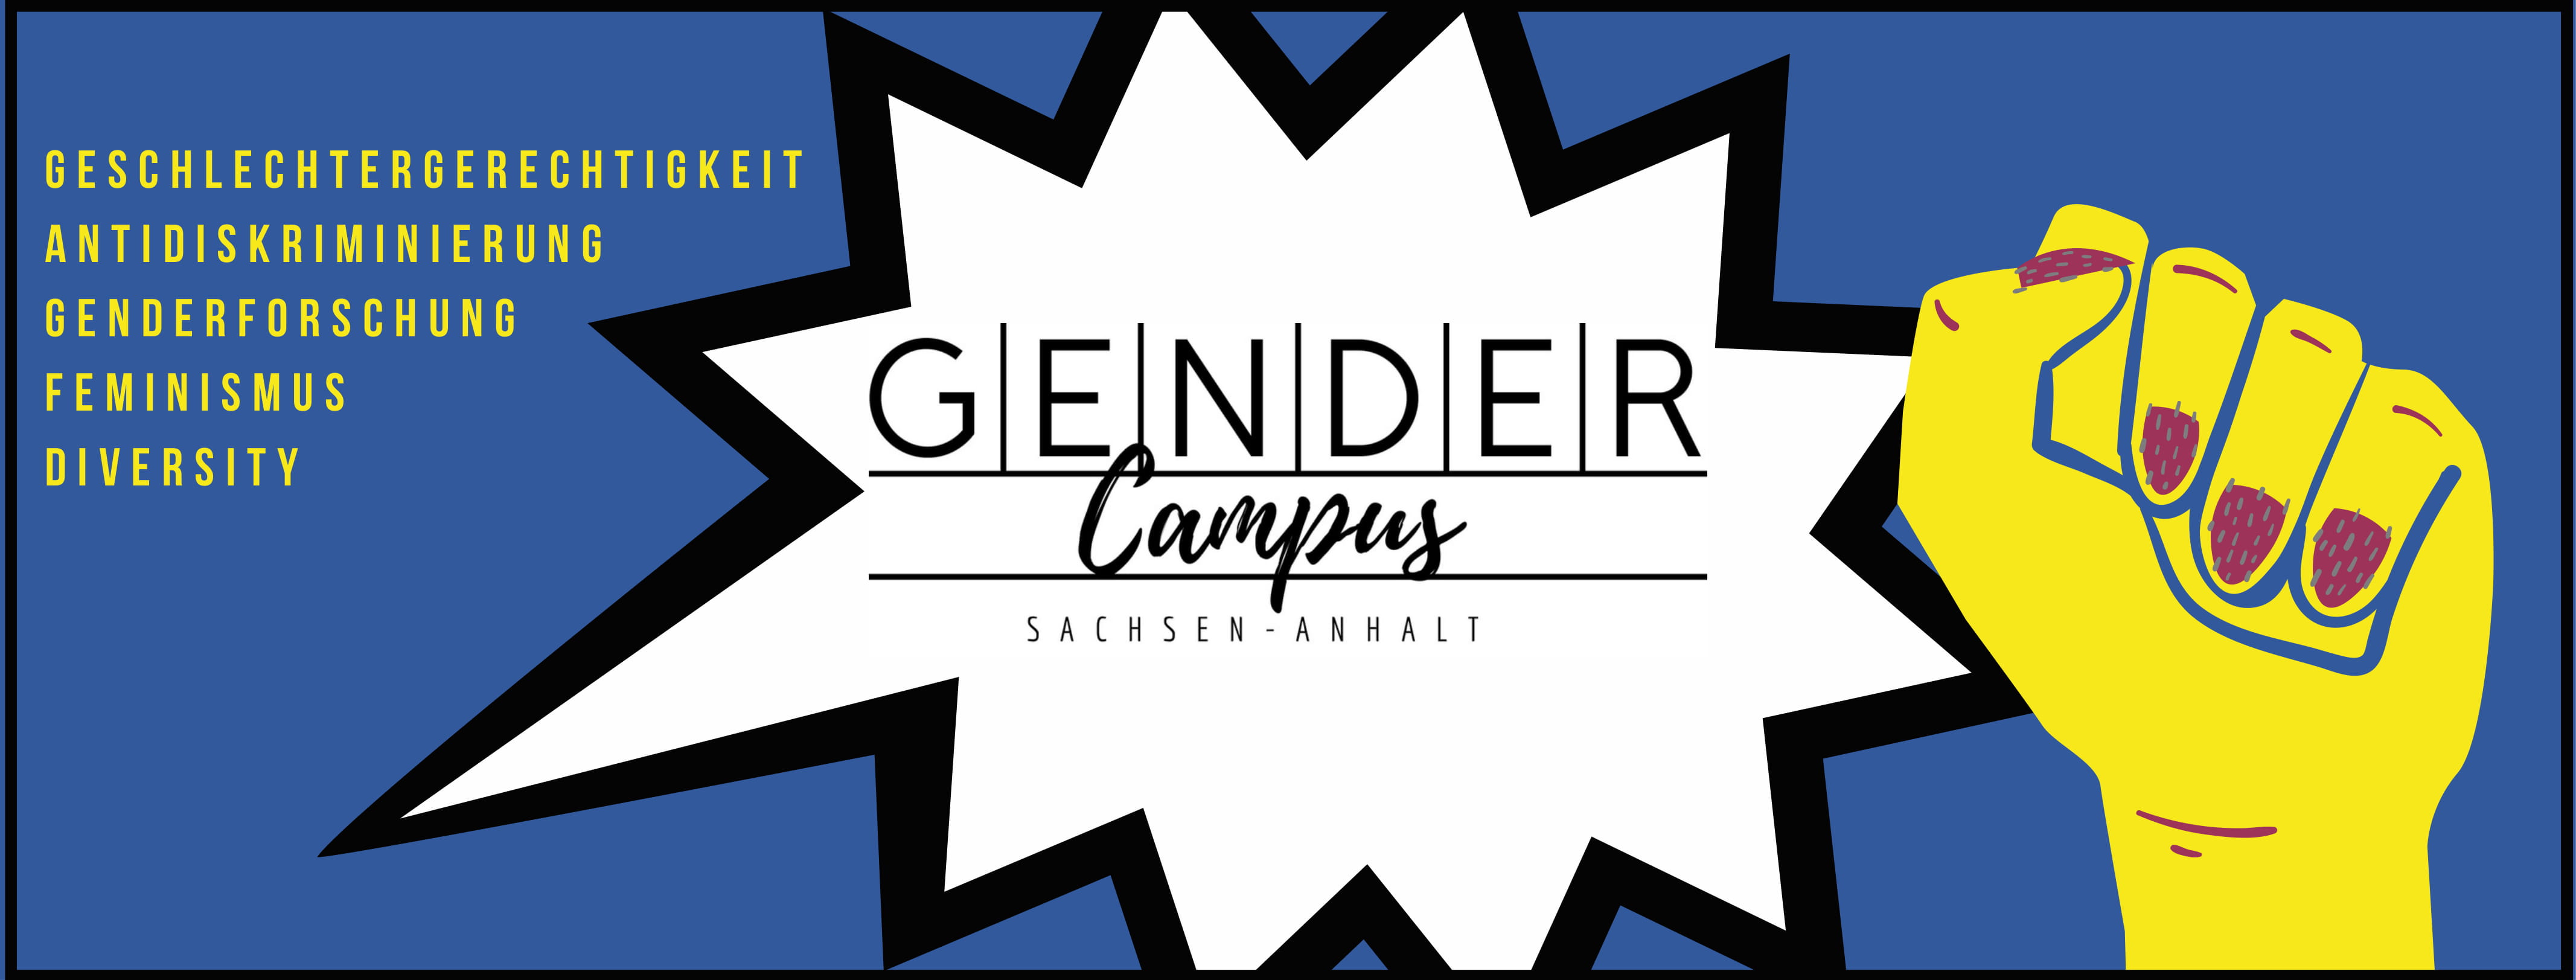 Über den Gendercampus Sachsen-Anhalt